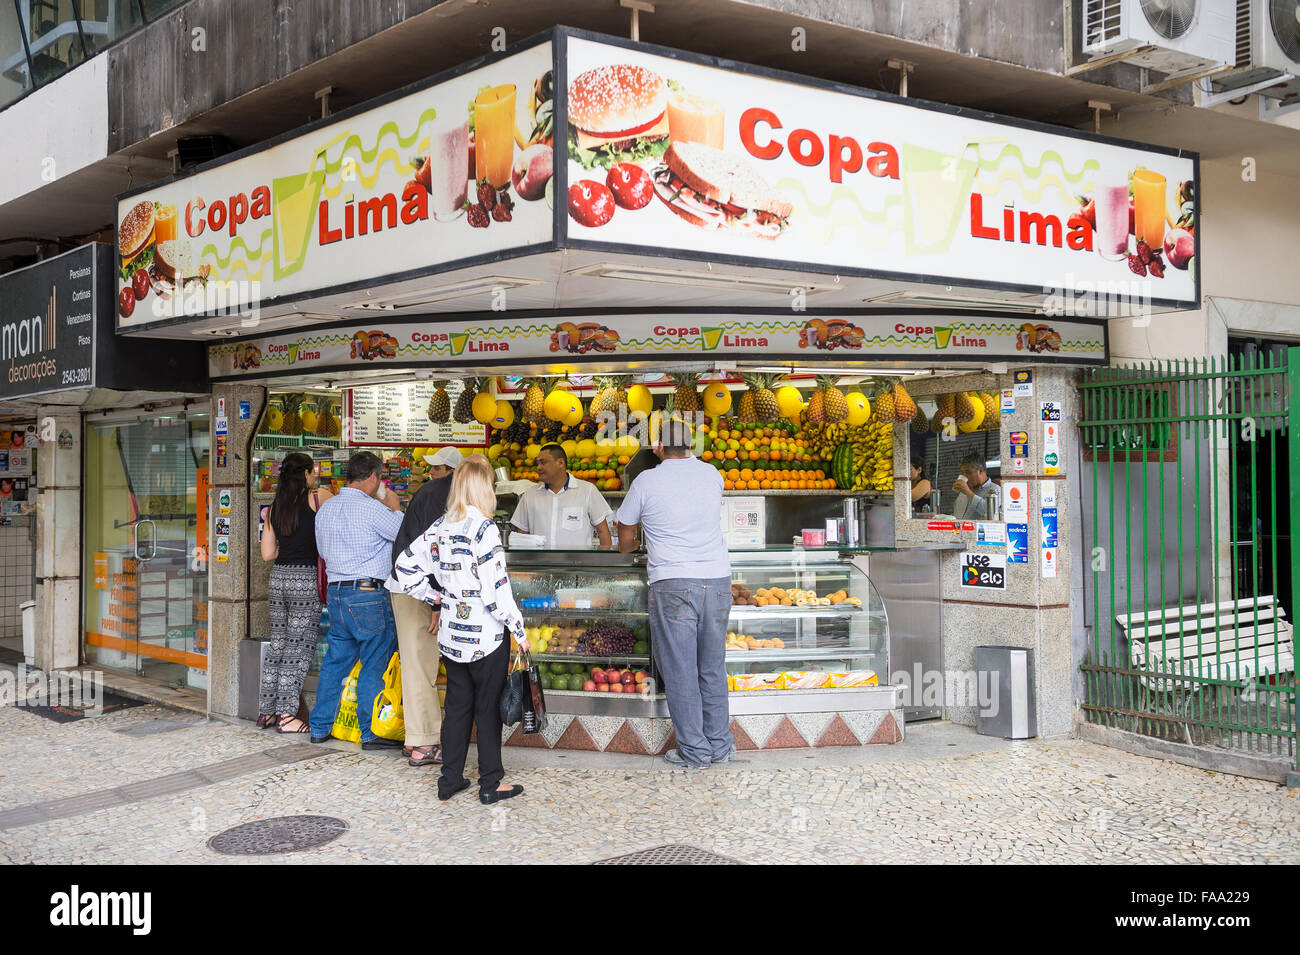 RIO DE JANEIRO, Brasilien - 25. Oktober 2015: Kunden versammeln sich am typischen brasilianischen Saft Stand im Stadtteil Copacabana. Stockfoto